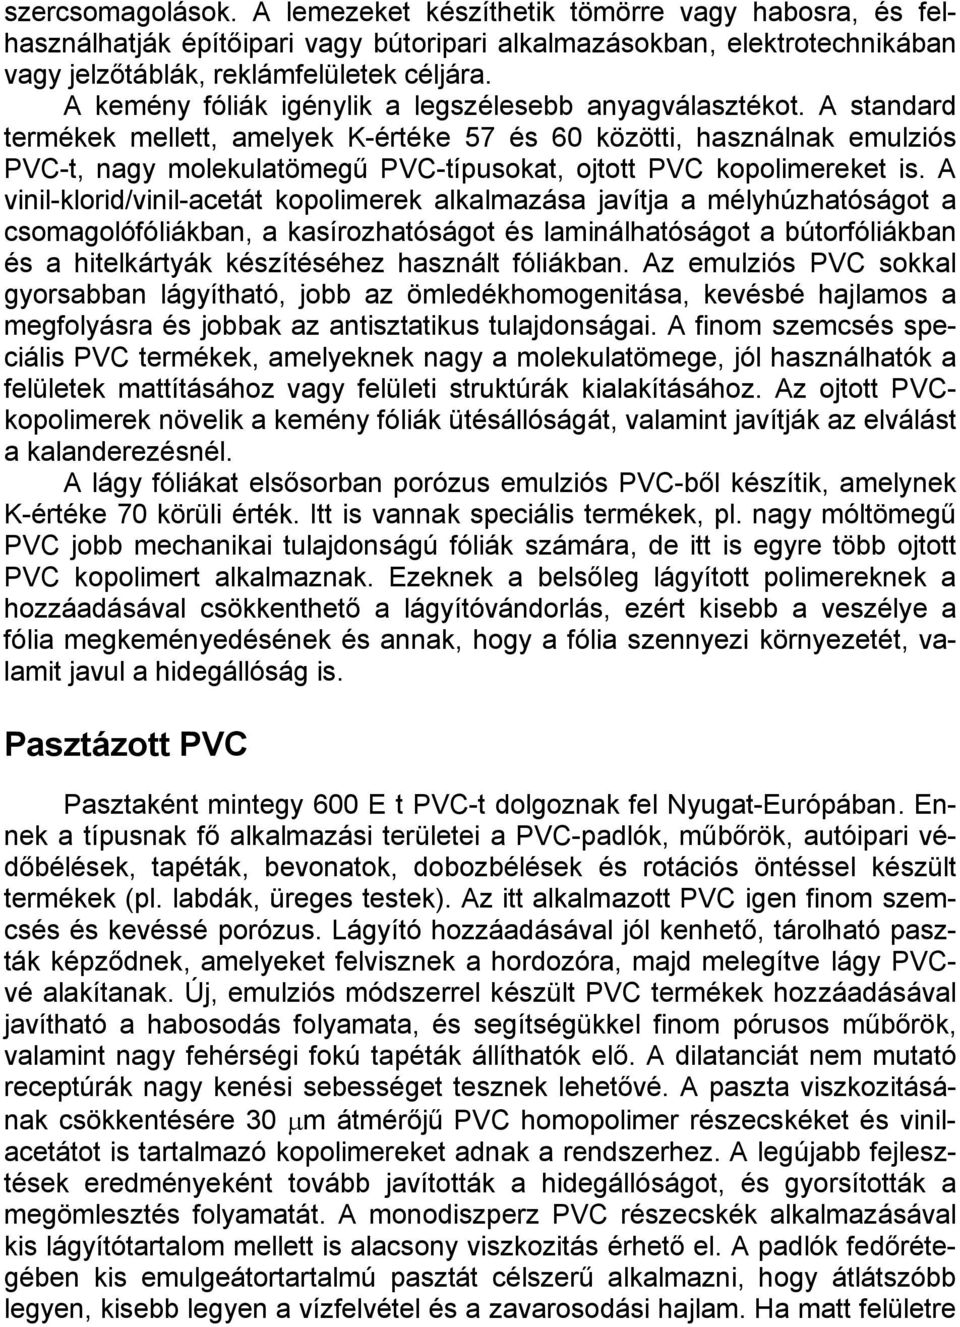 A standard termékek mellett, amelyek K-értéke 57 és 60 közötti, használnak emulziós PVC-t, nagy molekulatömegű PVC-típusokat, ojtott PVC kopolimereket is.